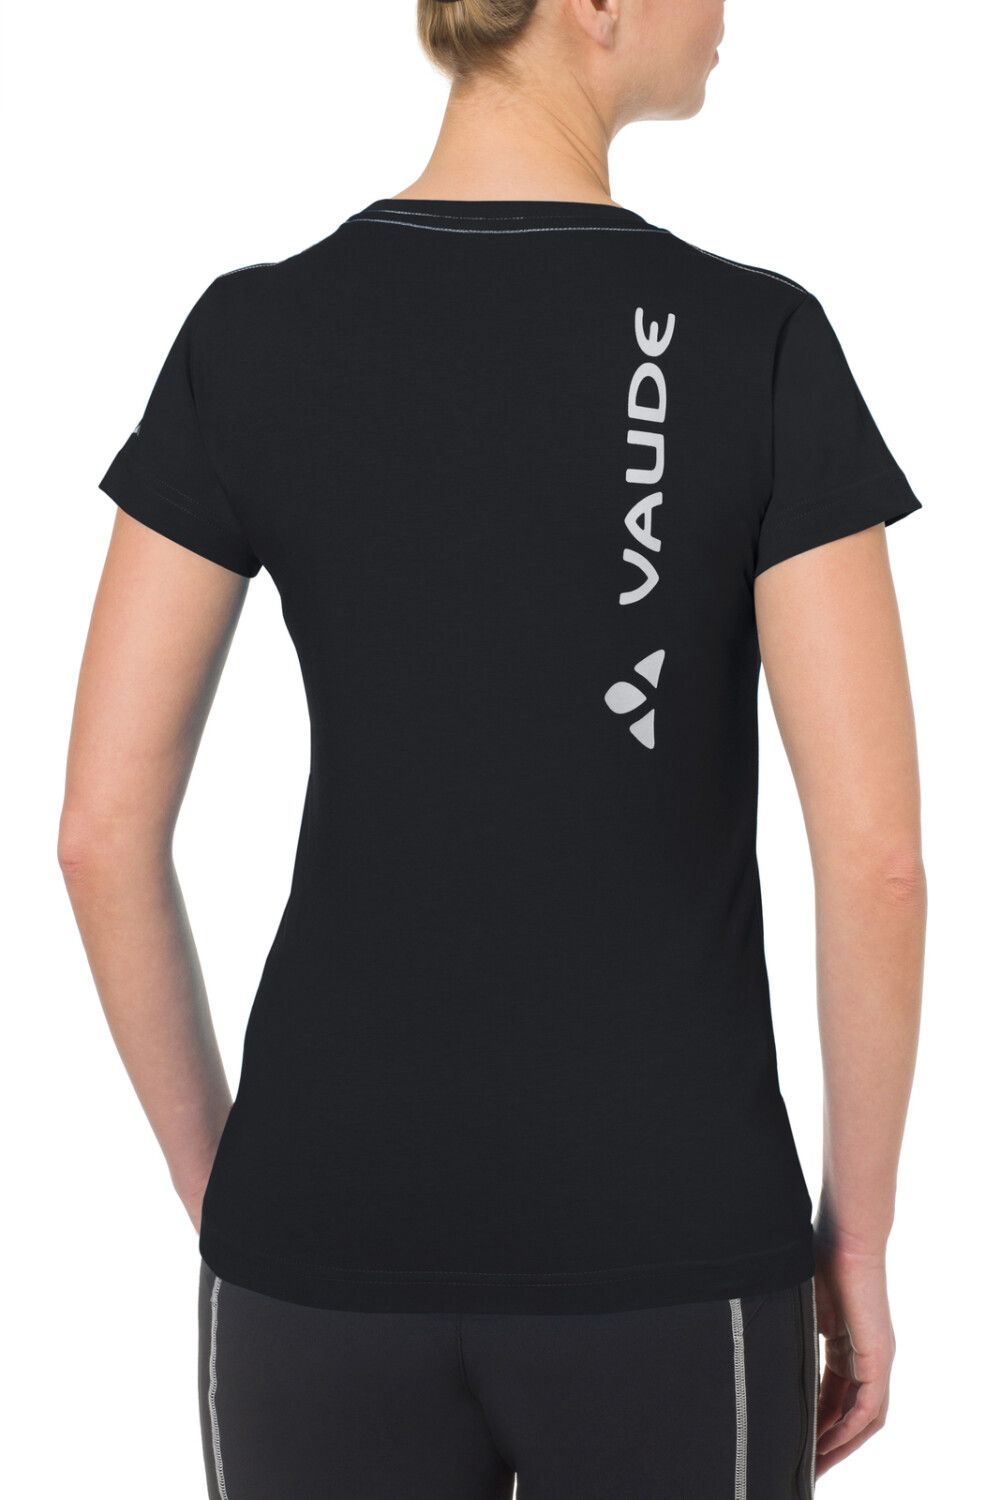 VAUDE Women's Brand Shirt (Bild 16)